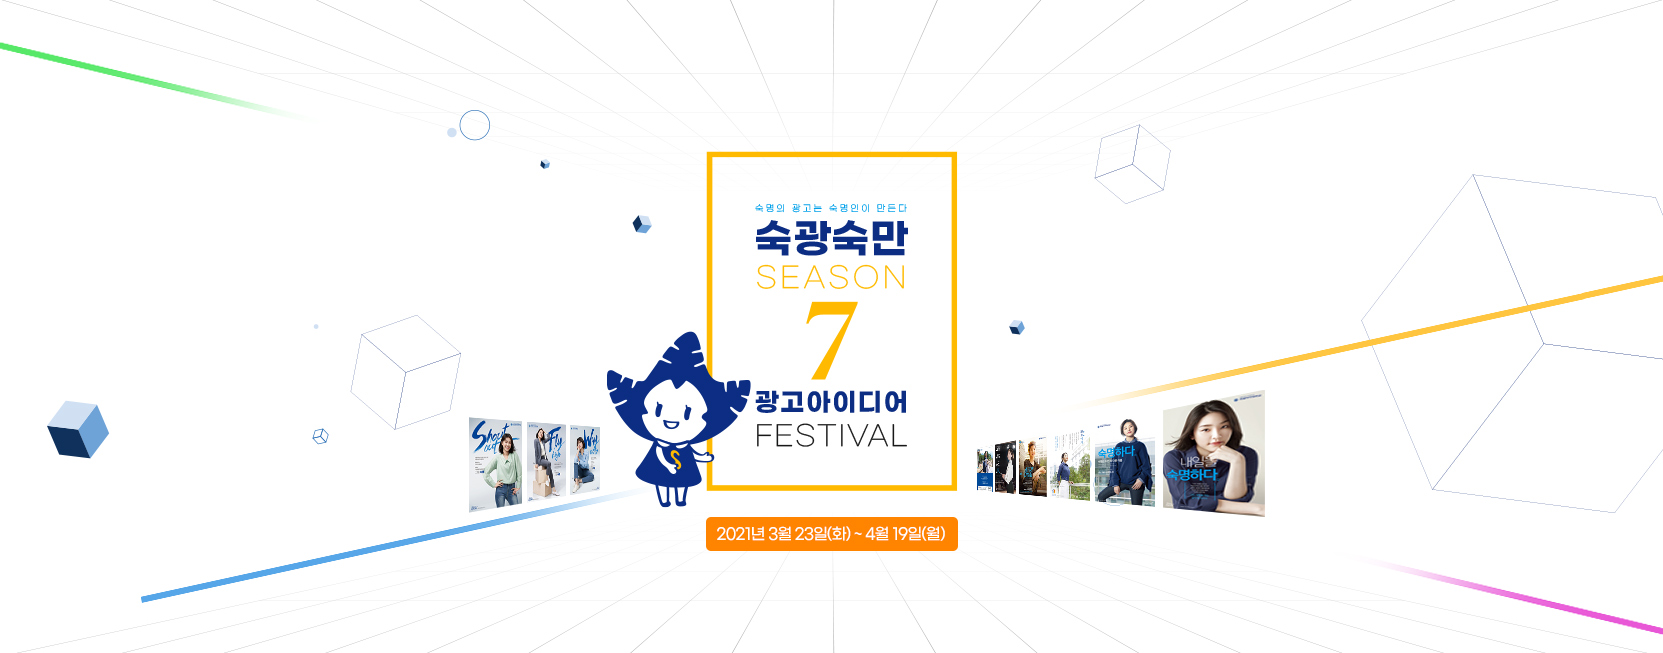 숙광숙만 시즌7! 광고아이디어 페스티벌
2021년 3월 23일(화) ~ 4월 19일(화)